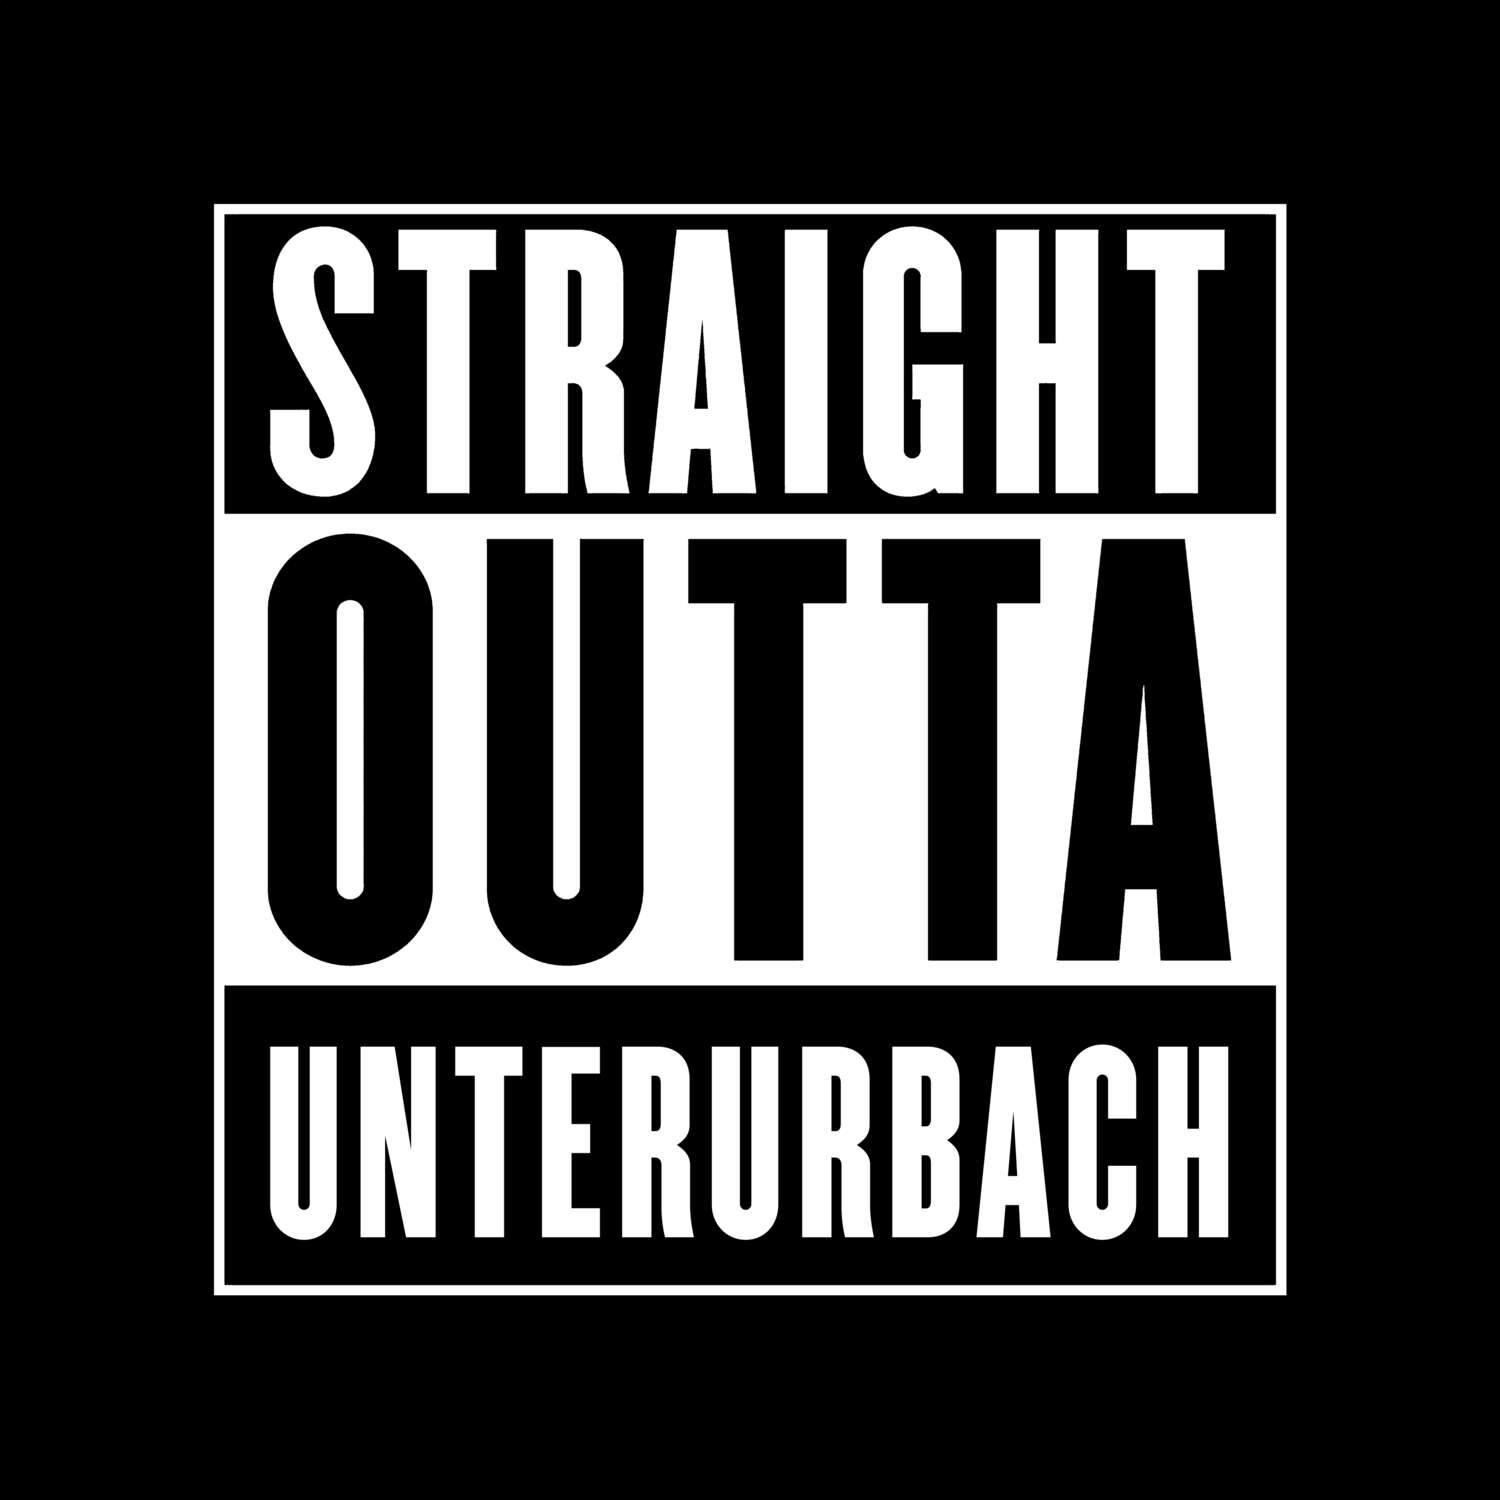 Unterurbach T-Shirt »Straight Outta«